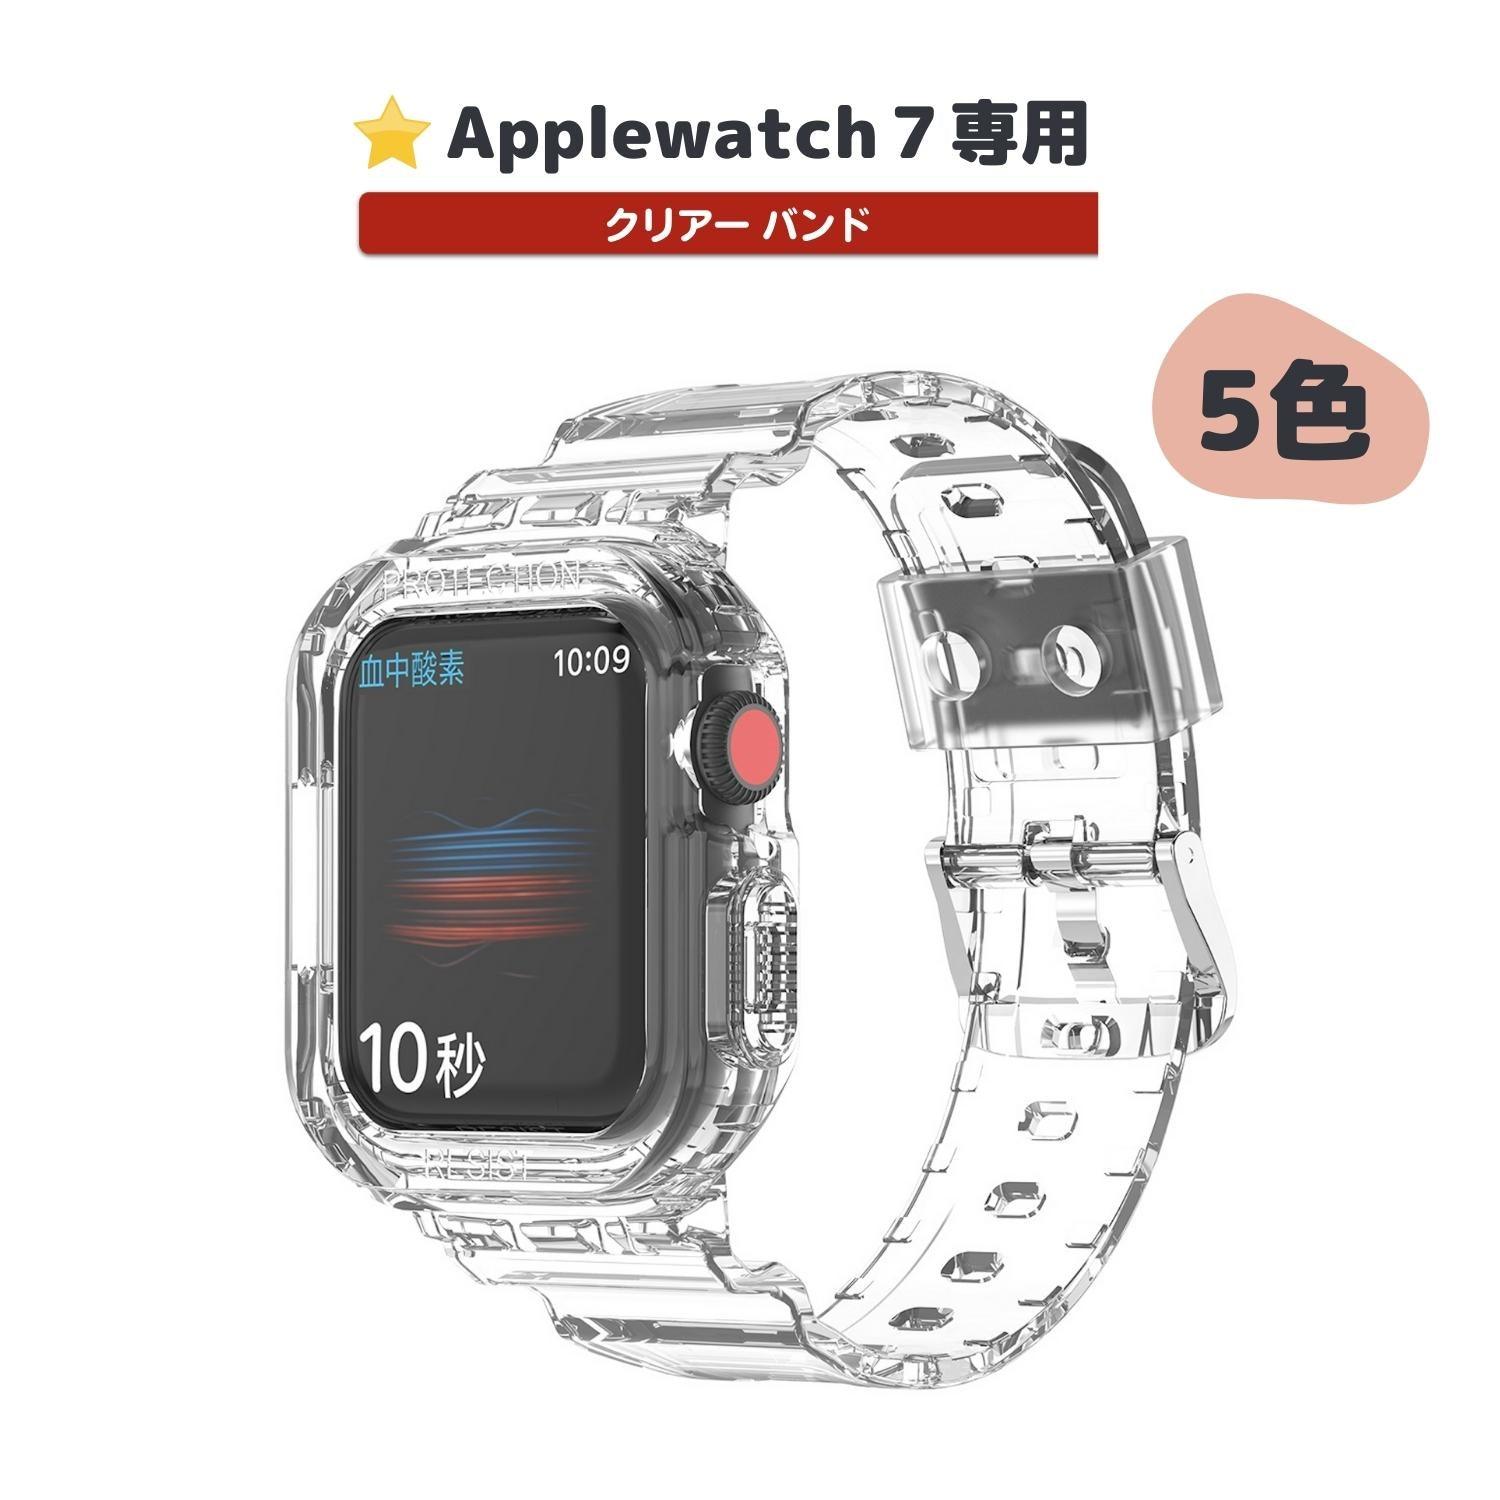 ★人気★ Applewatch7専用_クリアー バンド apple watch バンド givgiv 